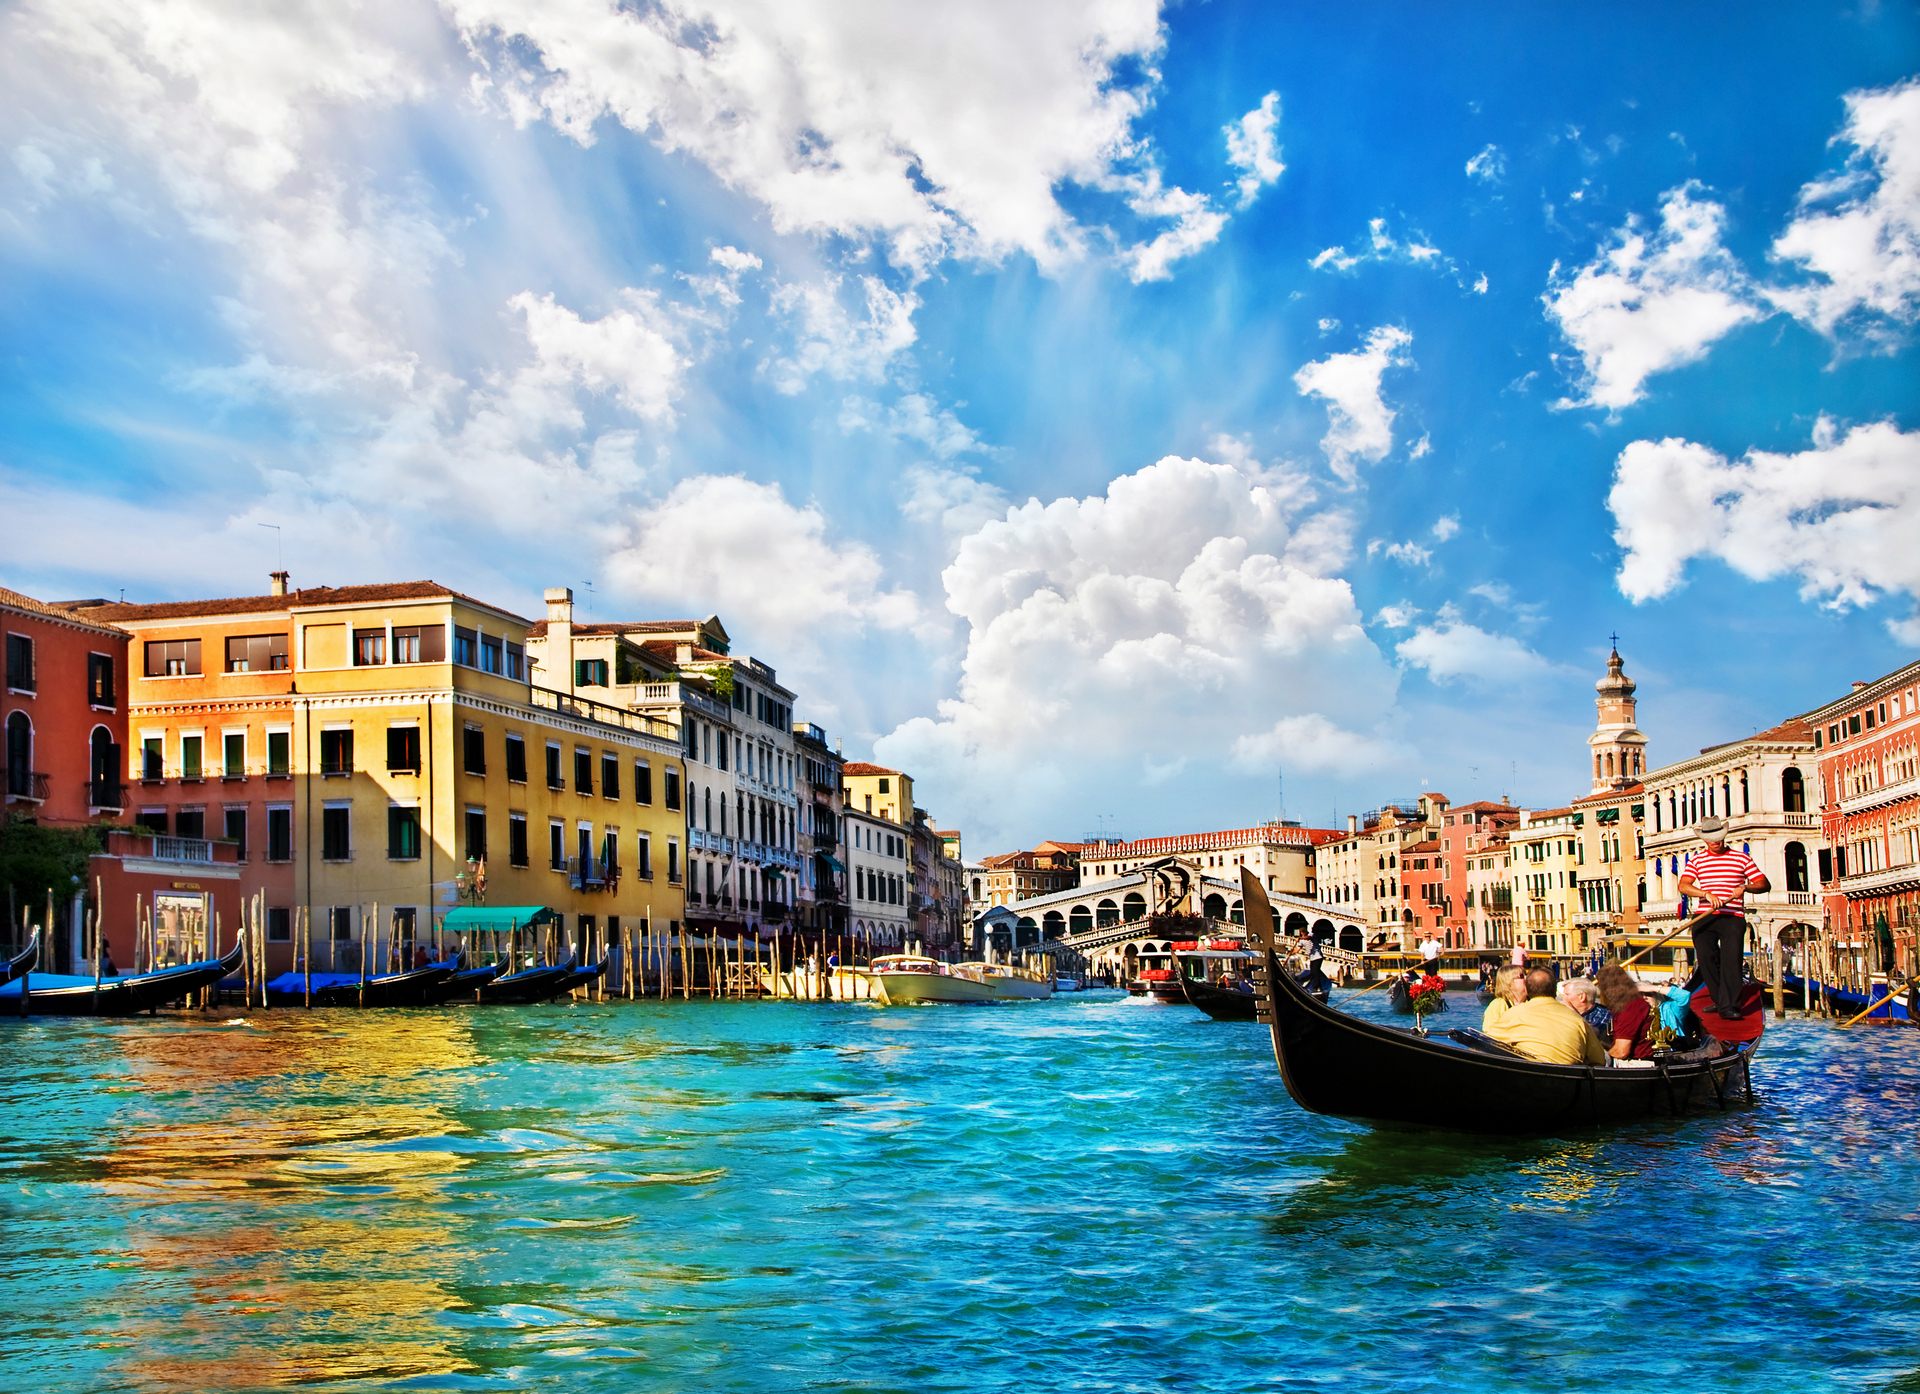 Скачать обои бесплатно Города, Венеция, Город, Гондола, Сделано Человеком картинка на рабочий стол ПК